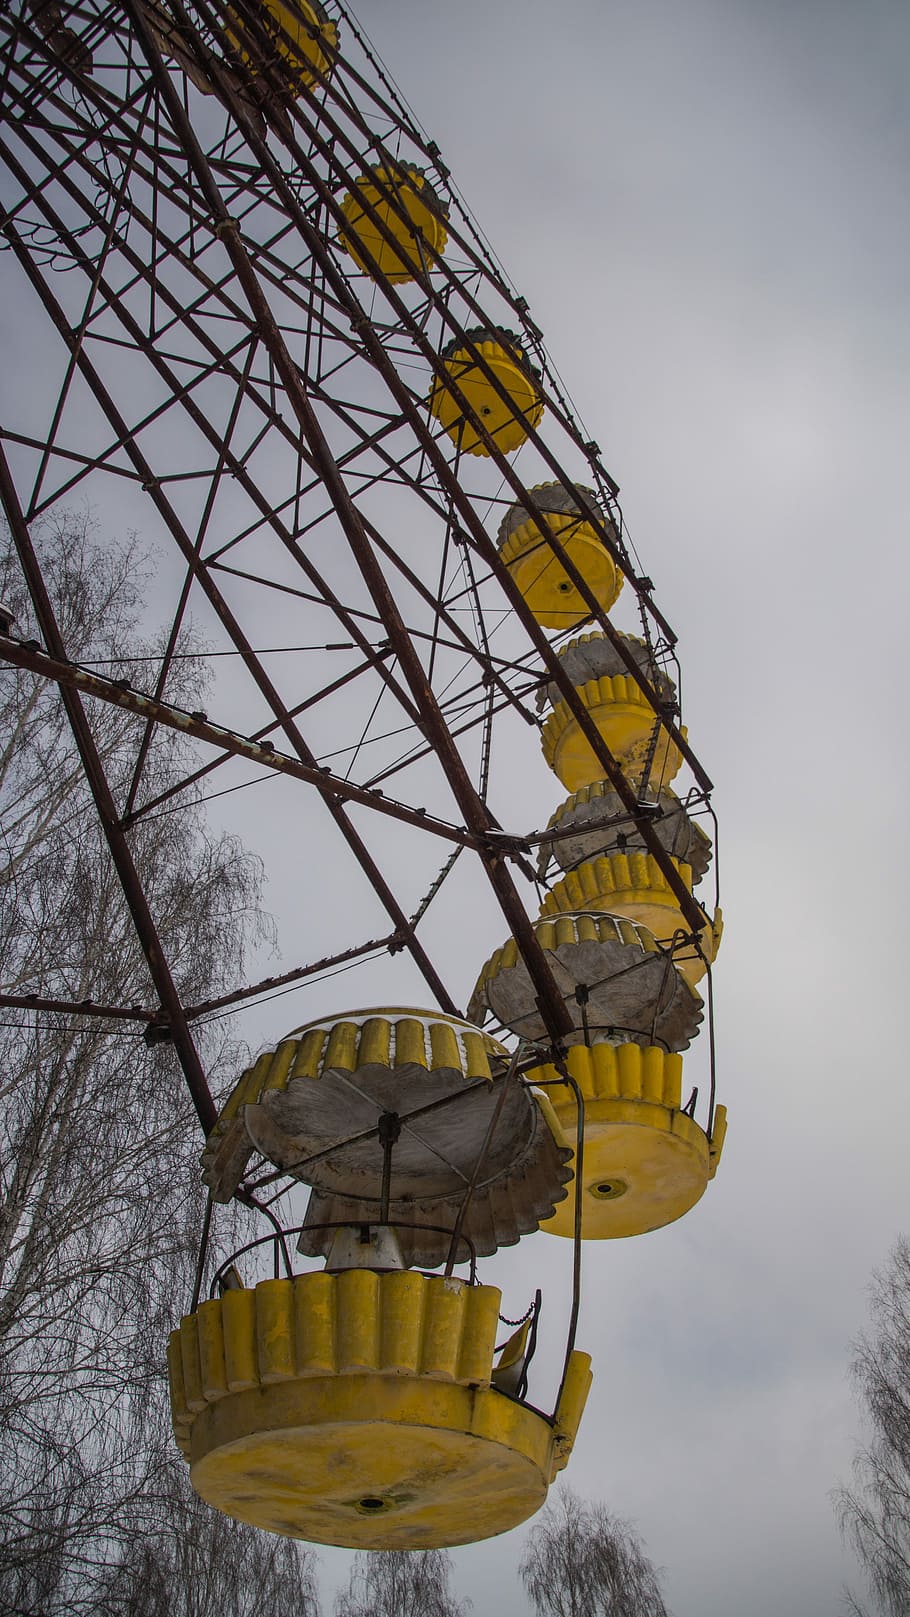 pripyat, carrossel, roda gigante, parque temático, recinto de diversão, ucrânia, diversão, carnaval, infância, parque de diversões